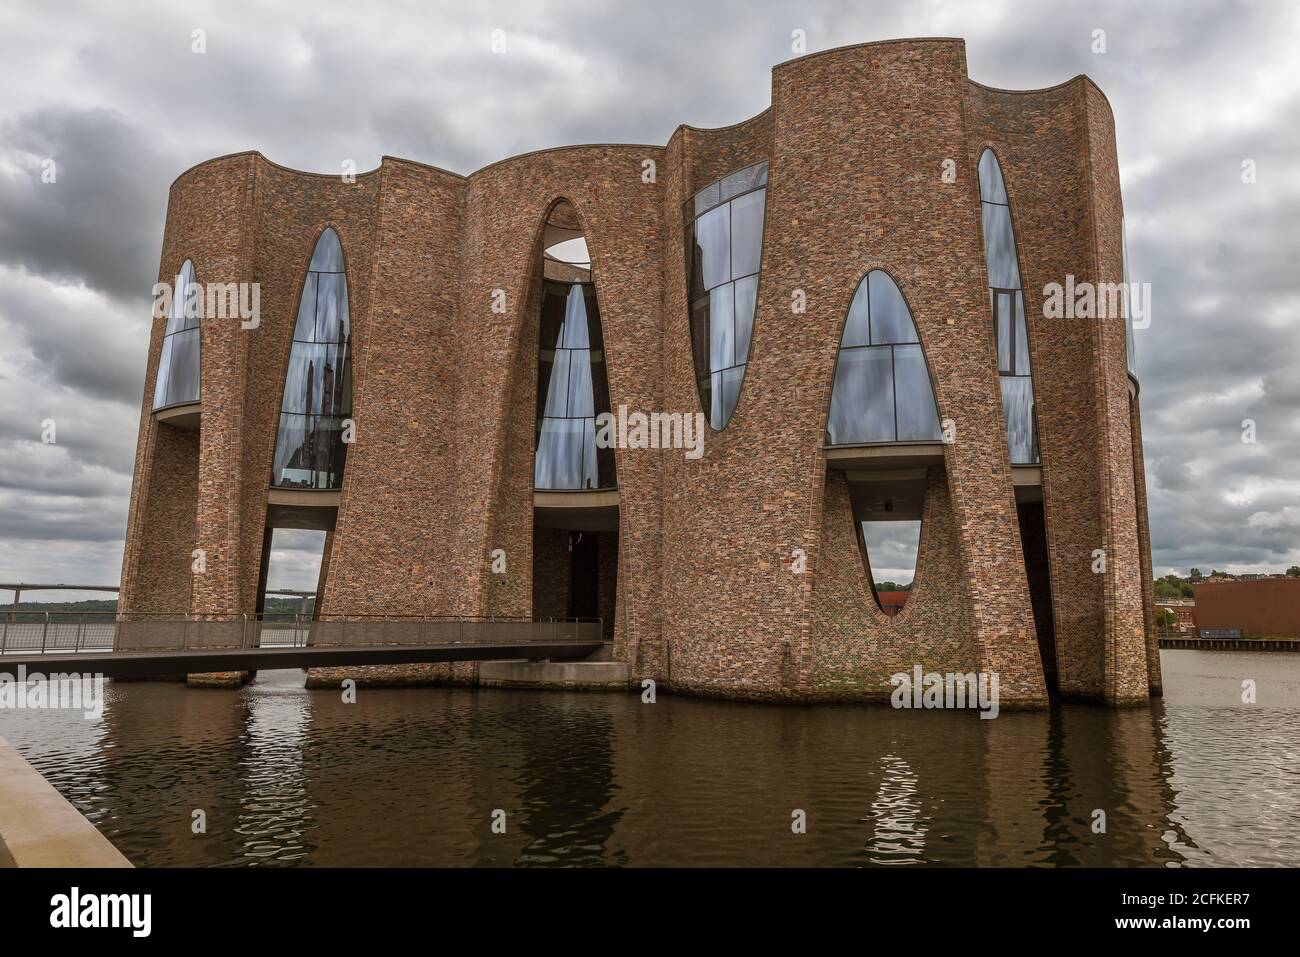 Fjordenhus in moderno design nordico che si riflette nelle acque del bacino portuale di Vejle ed è stato aperto il 9 giugno 2018. Danimarca, 9 giugno 2020 Foto Stock